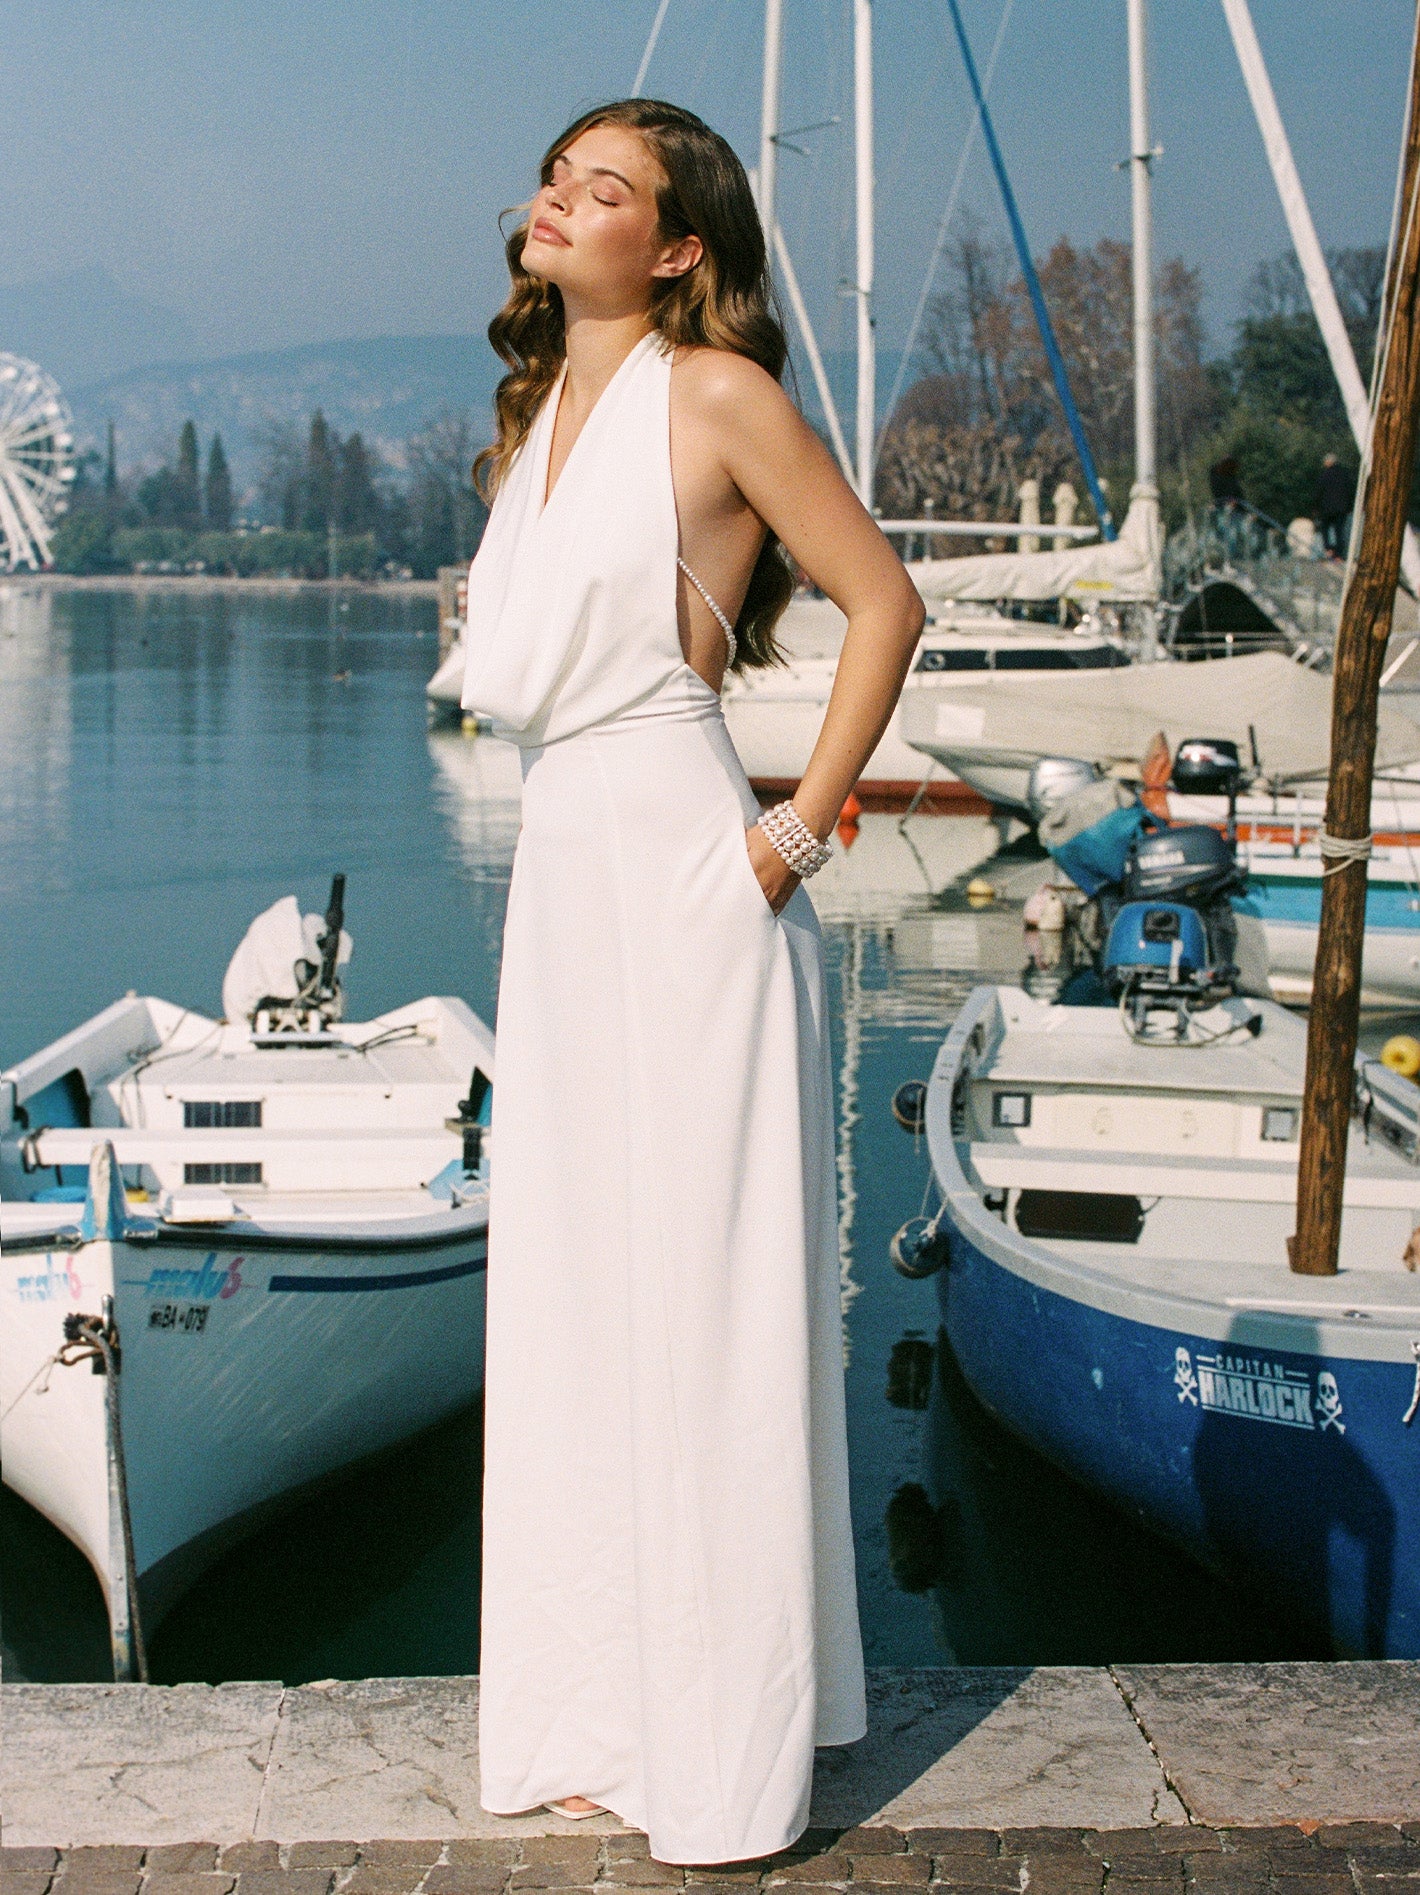 Aniya Satin Dress (White)